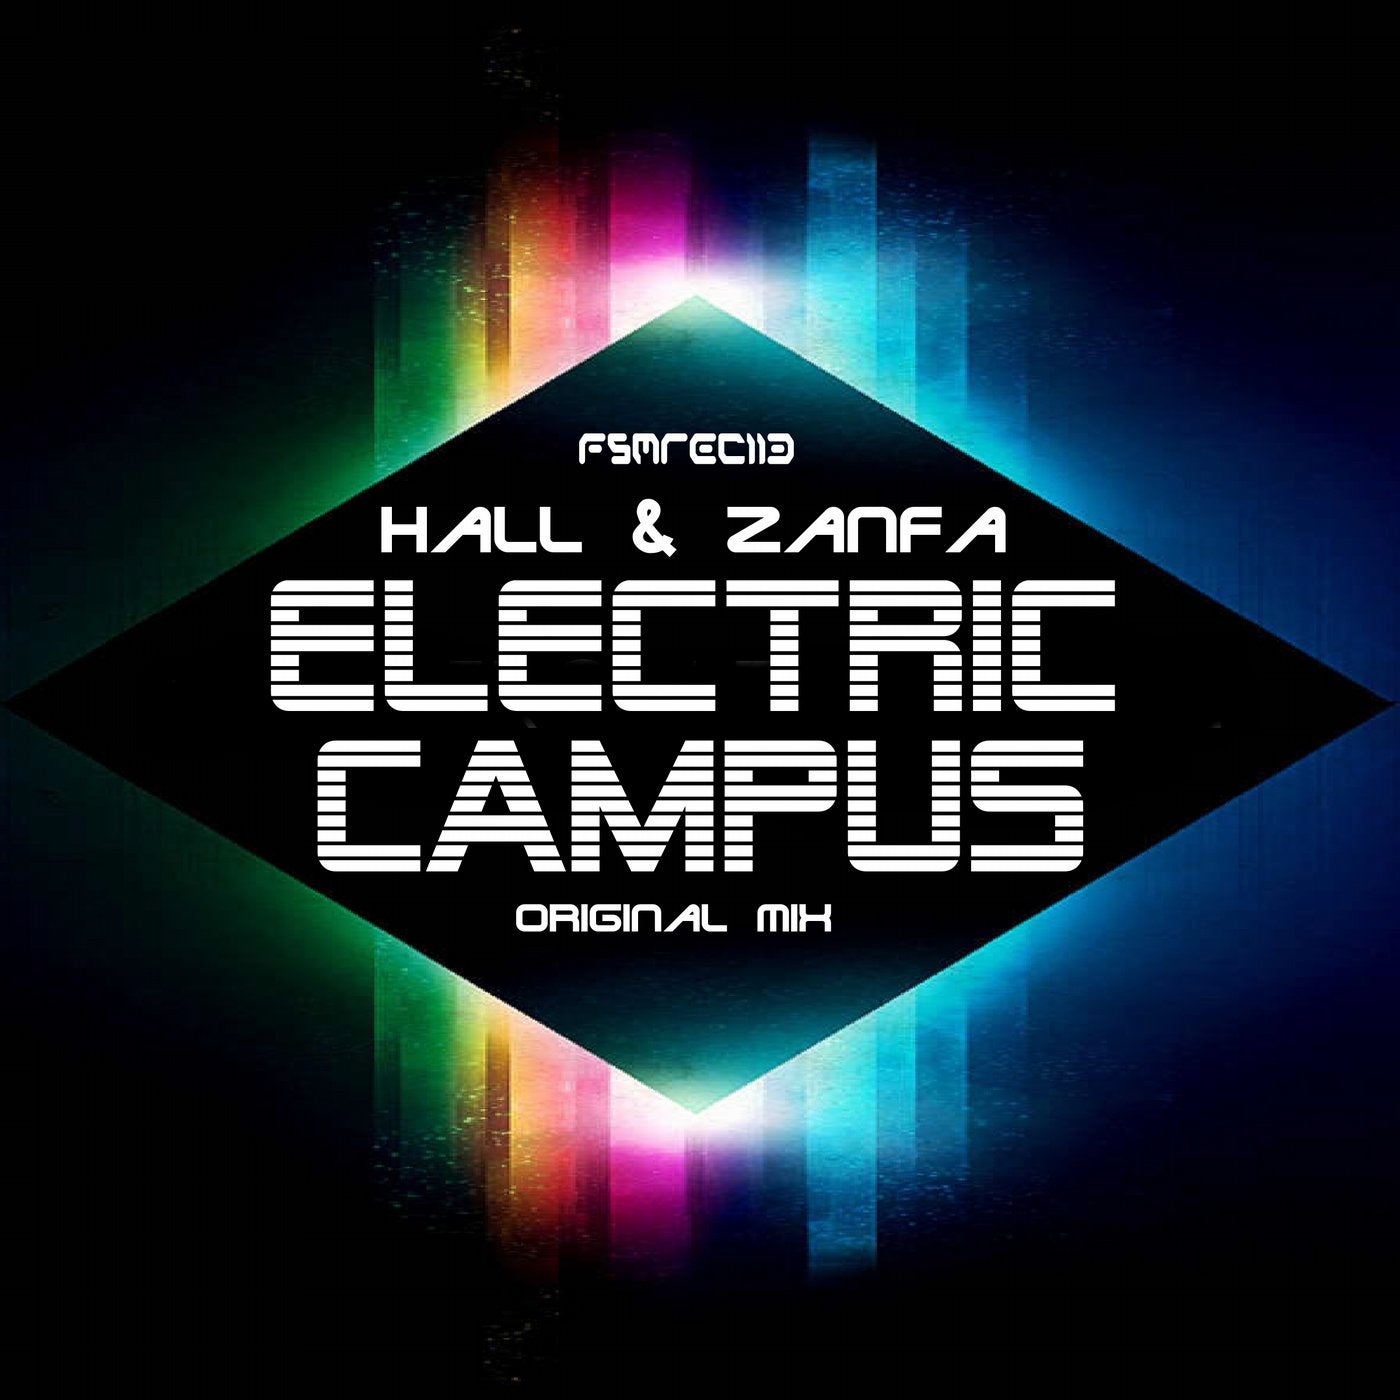 Electric Campus